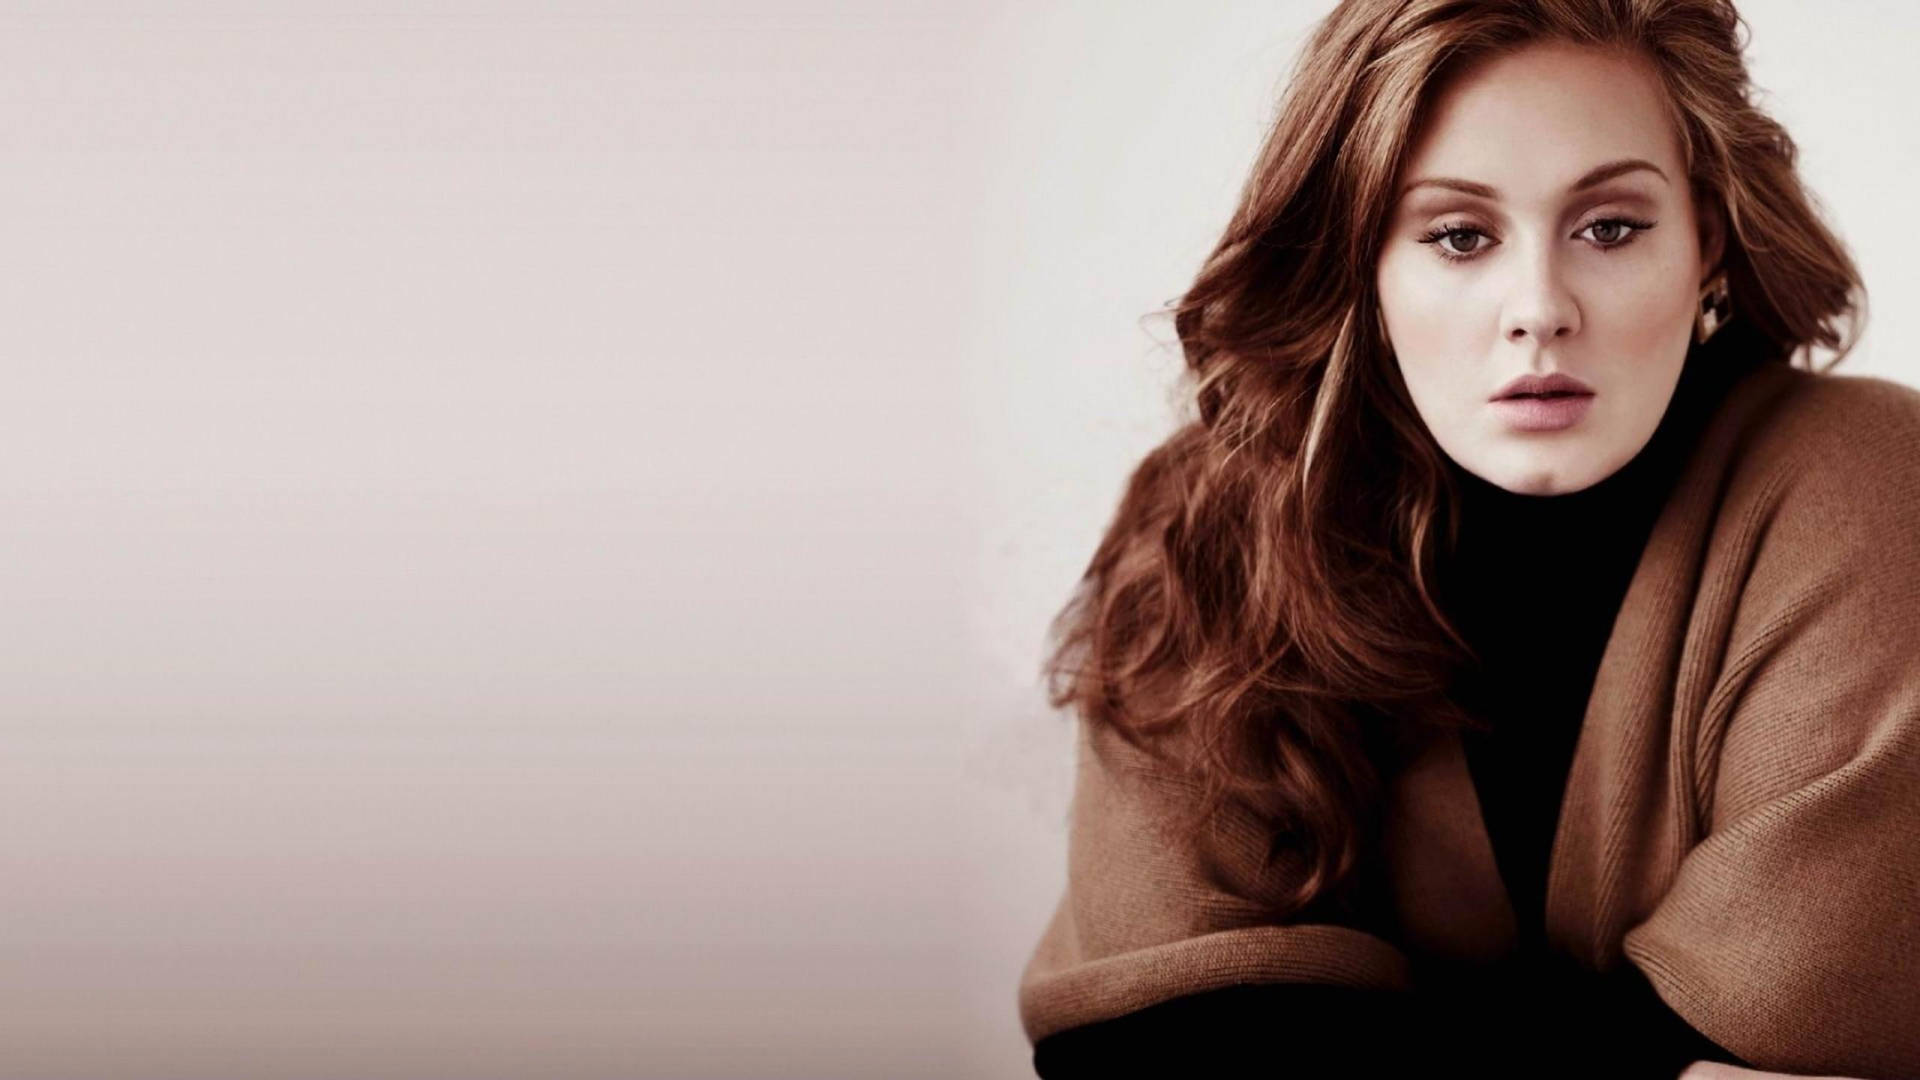 Singer-songwriter Adele Background